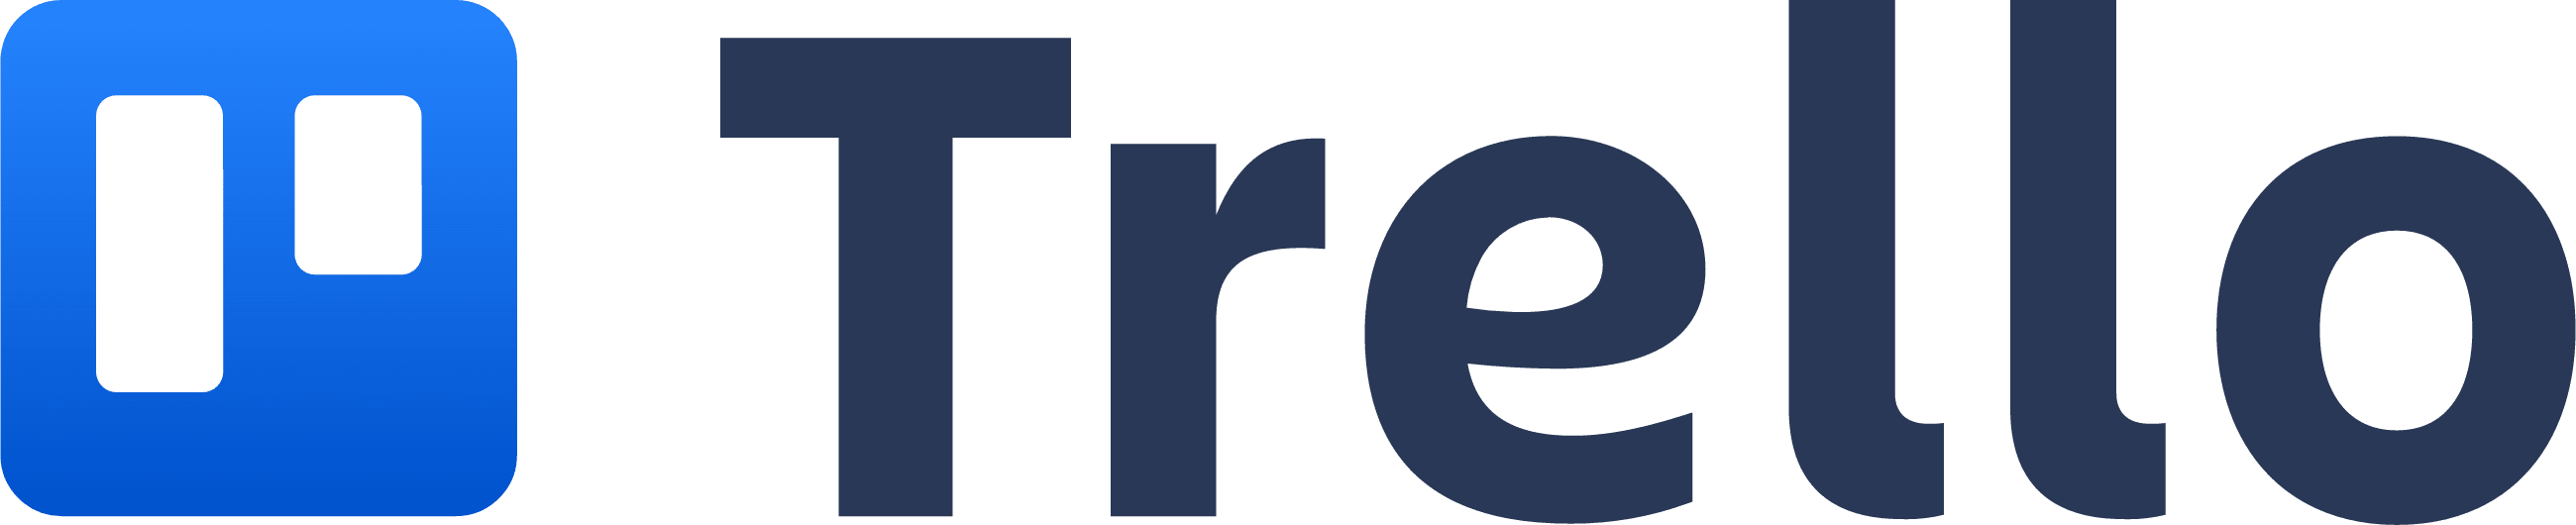 Logo Trello qui ressemble à un tableau Trello avec deux colonnes